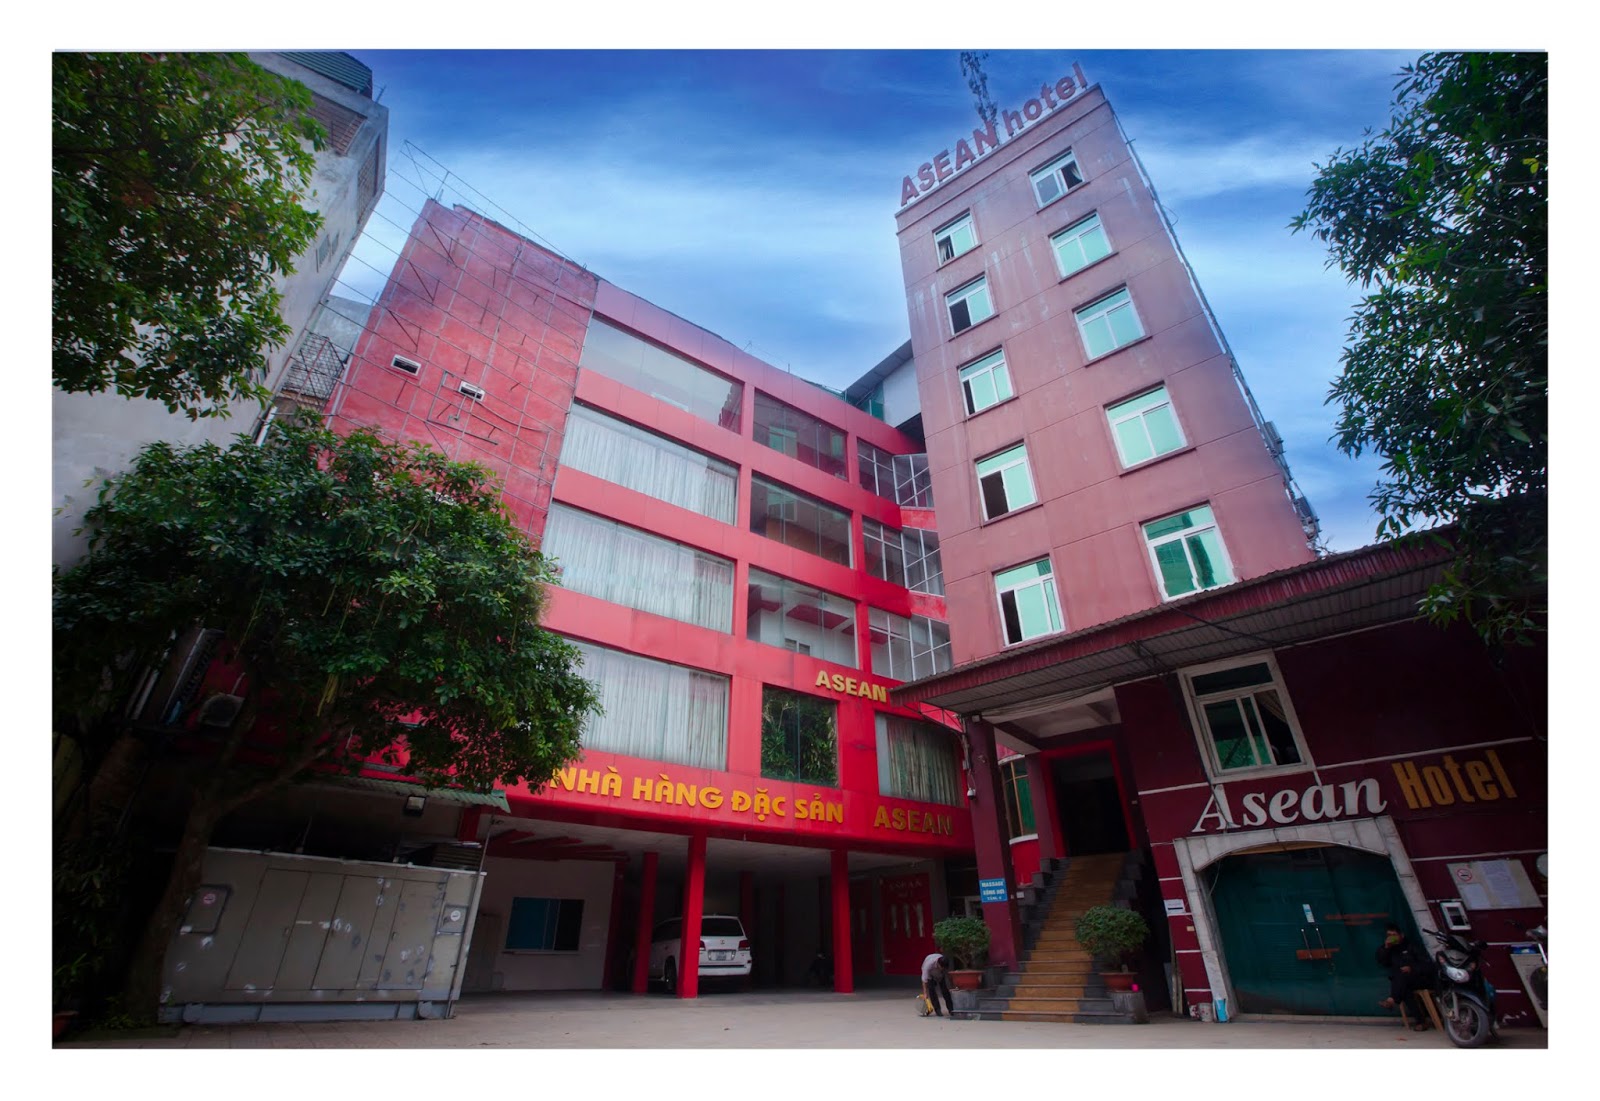 Asean Hotel: Tối ưu năng suất phục vụ để tăng doanh thu, giảm chi phí